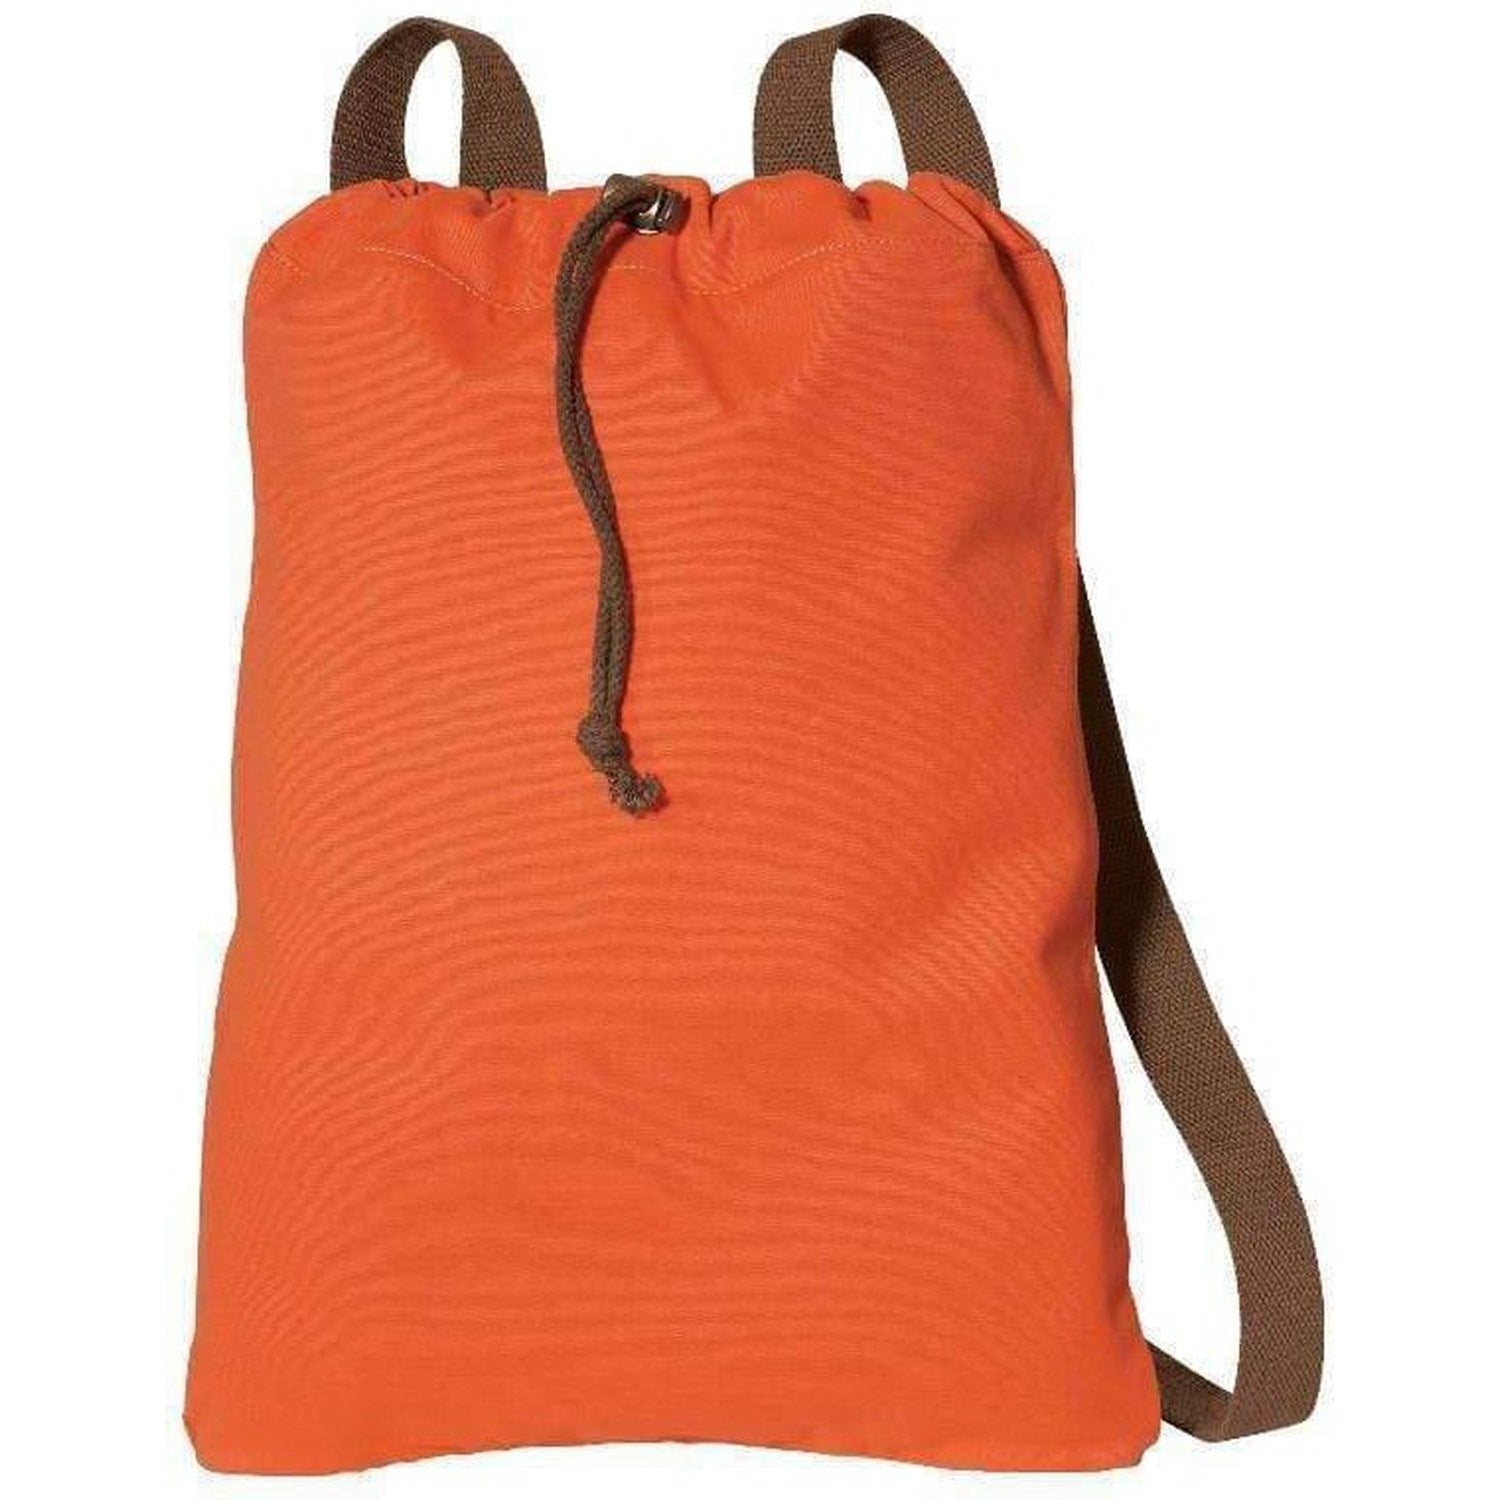 Canvas Drawstring Backpacks - Drawstring Bags Bulk - Cheap Backpacks – BagzDepot™